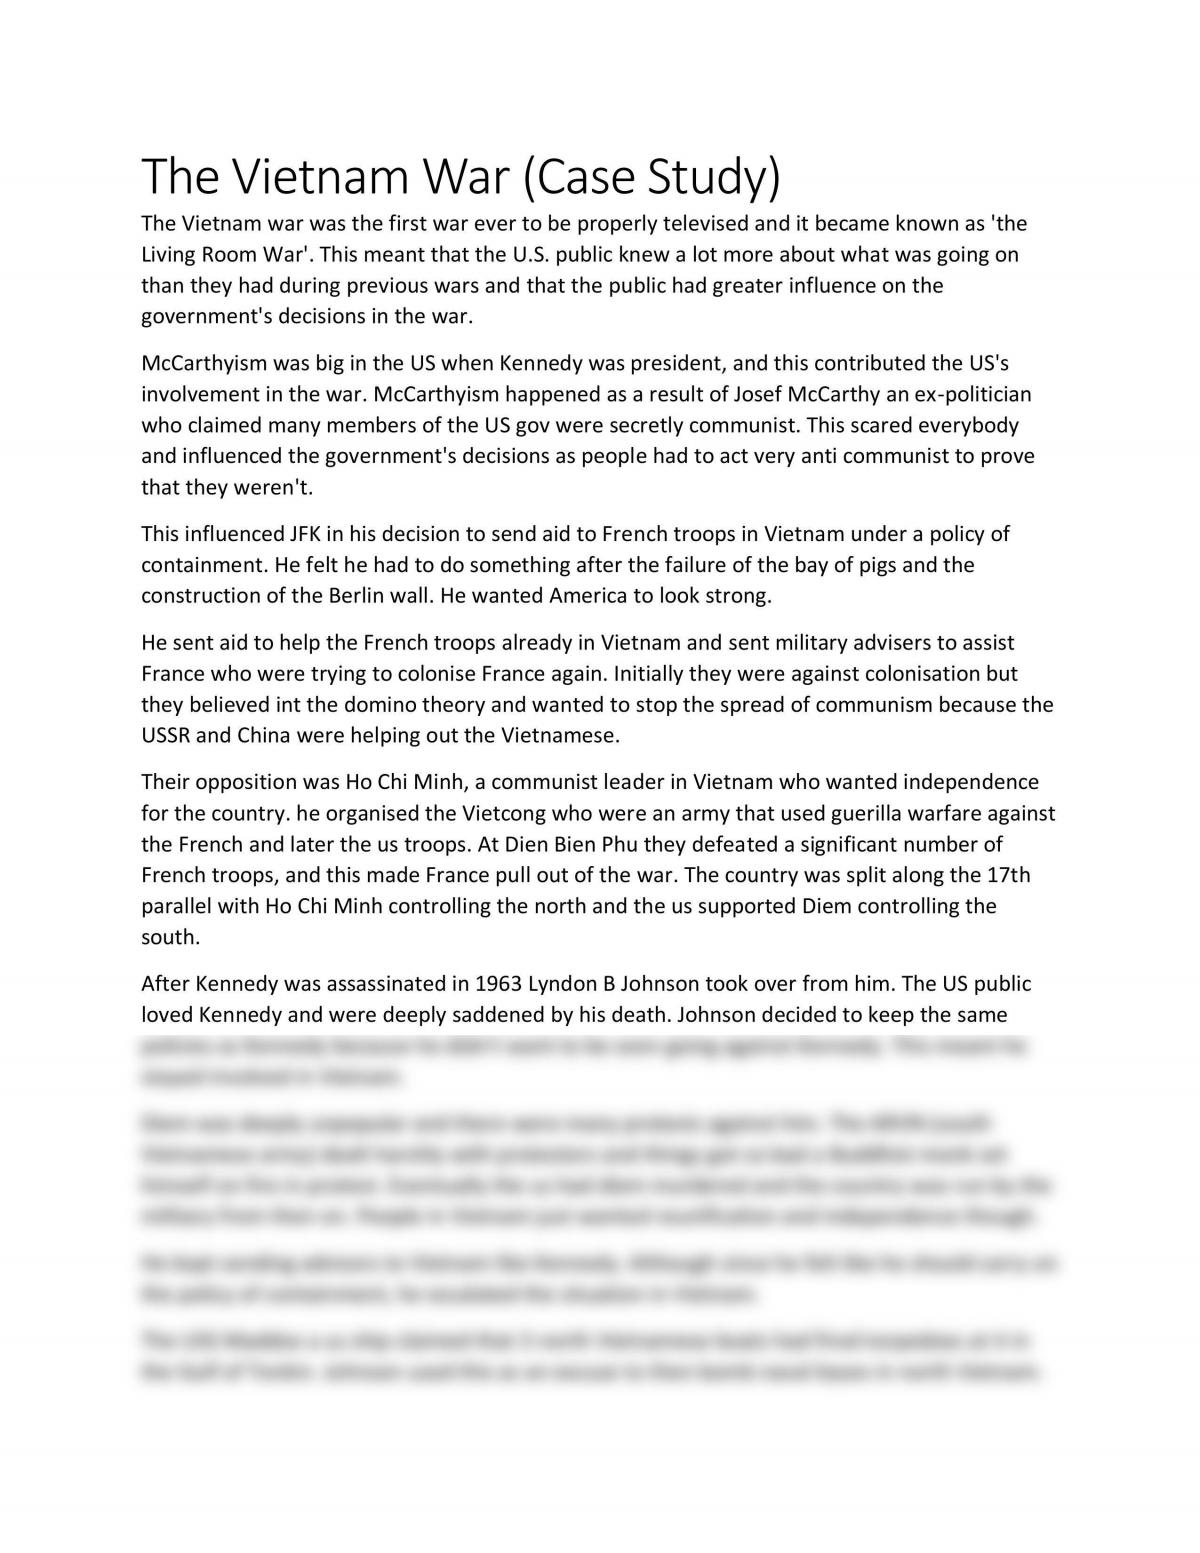 The Vietnam War Case Study Essay - Page 1